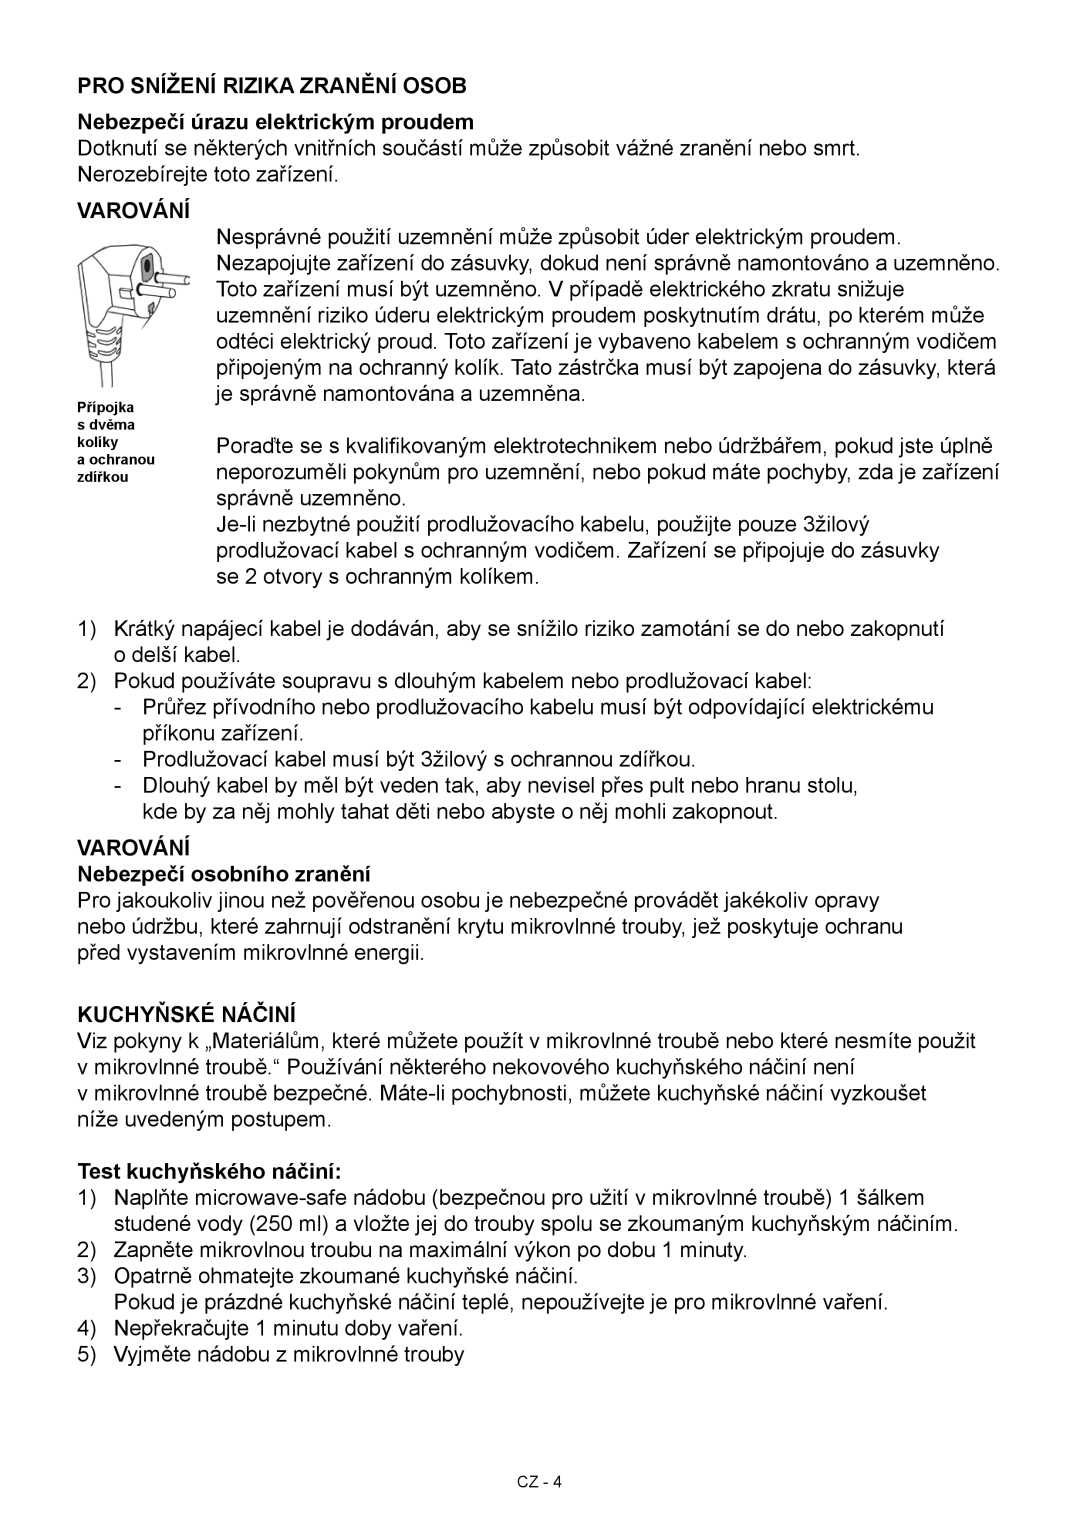 Hyundai MWEGH 281S manual Pro snížení rizika zranění osob Nebezpečí úrazu elektrickým proudem, Varování, Kuchyňské Náčiní 